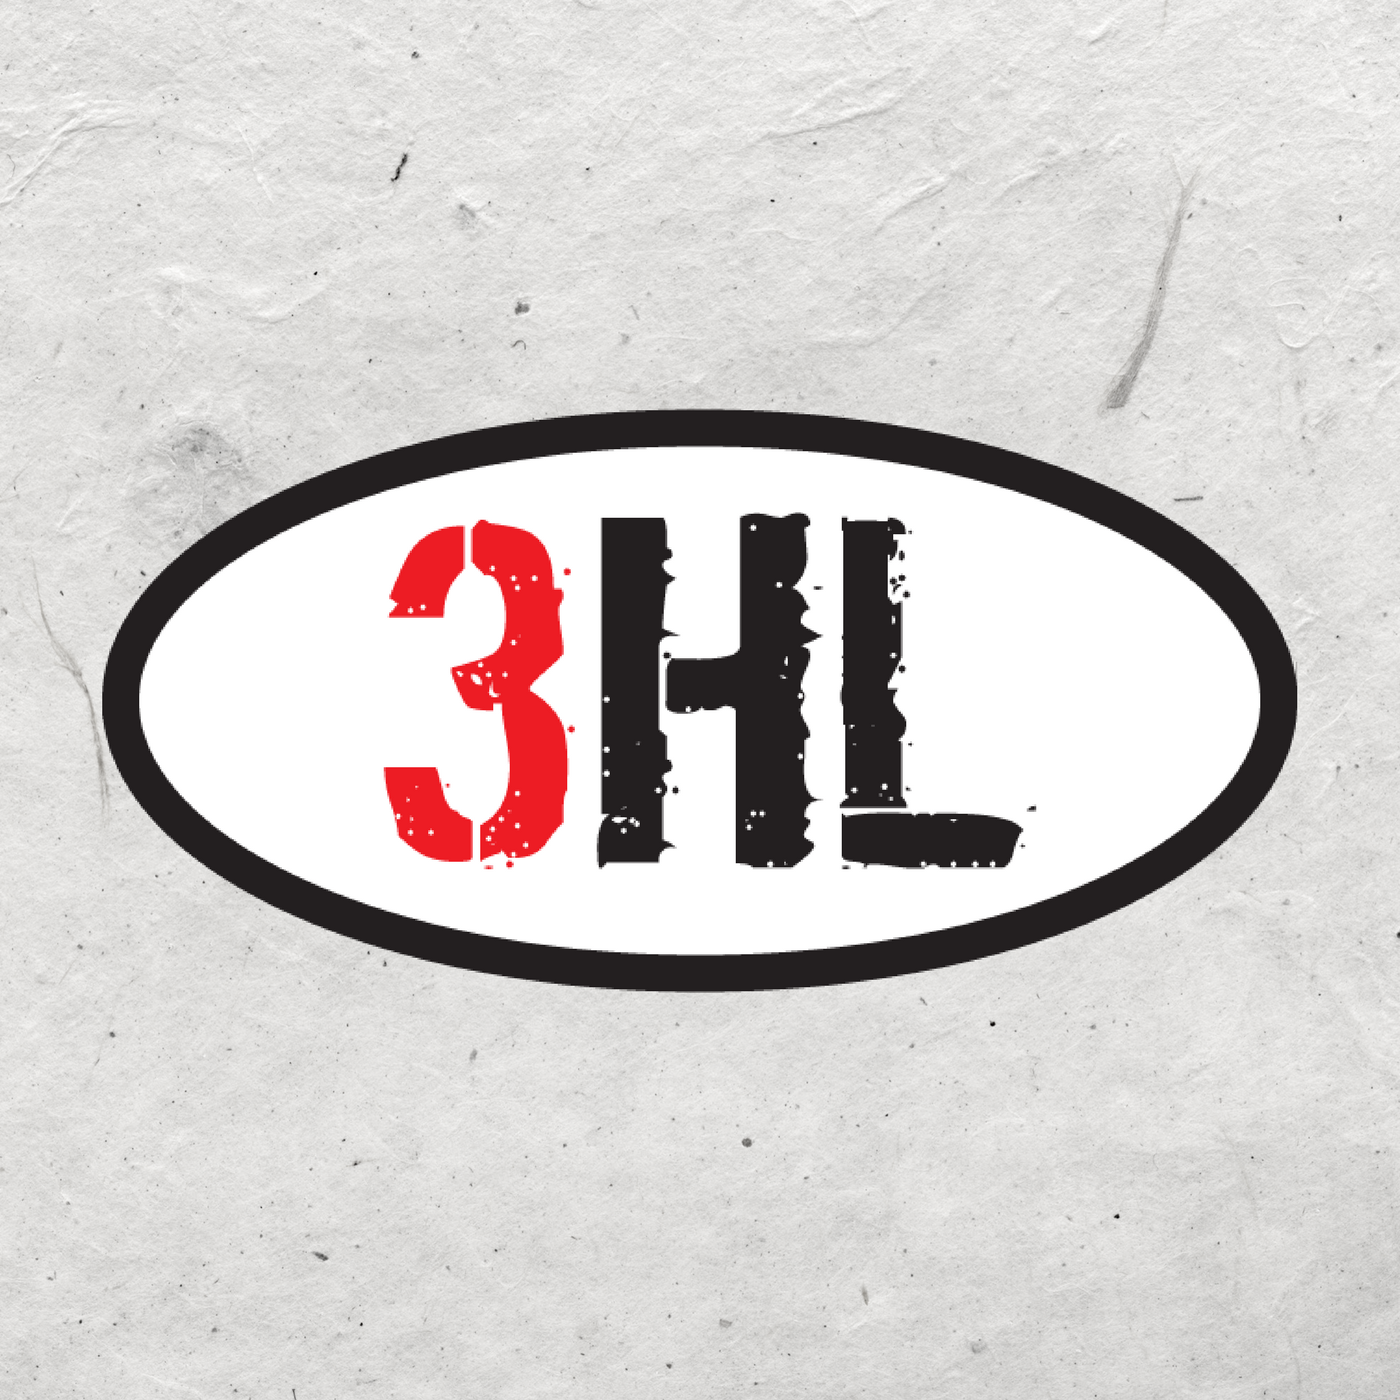 3HL - 3-7-24 - Hour 1 - Vols Win SEC Regular Season Title